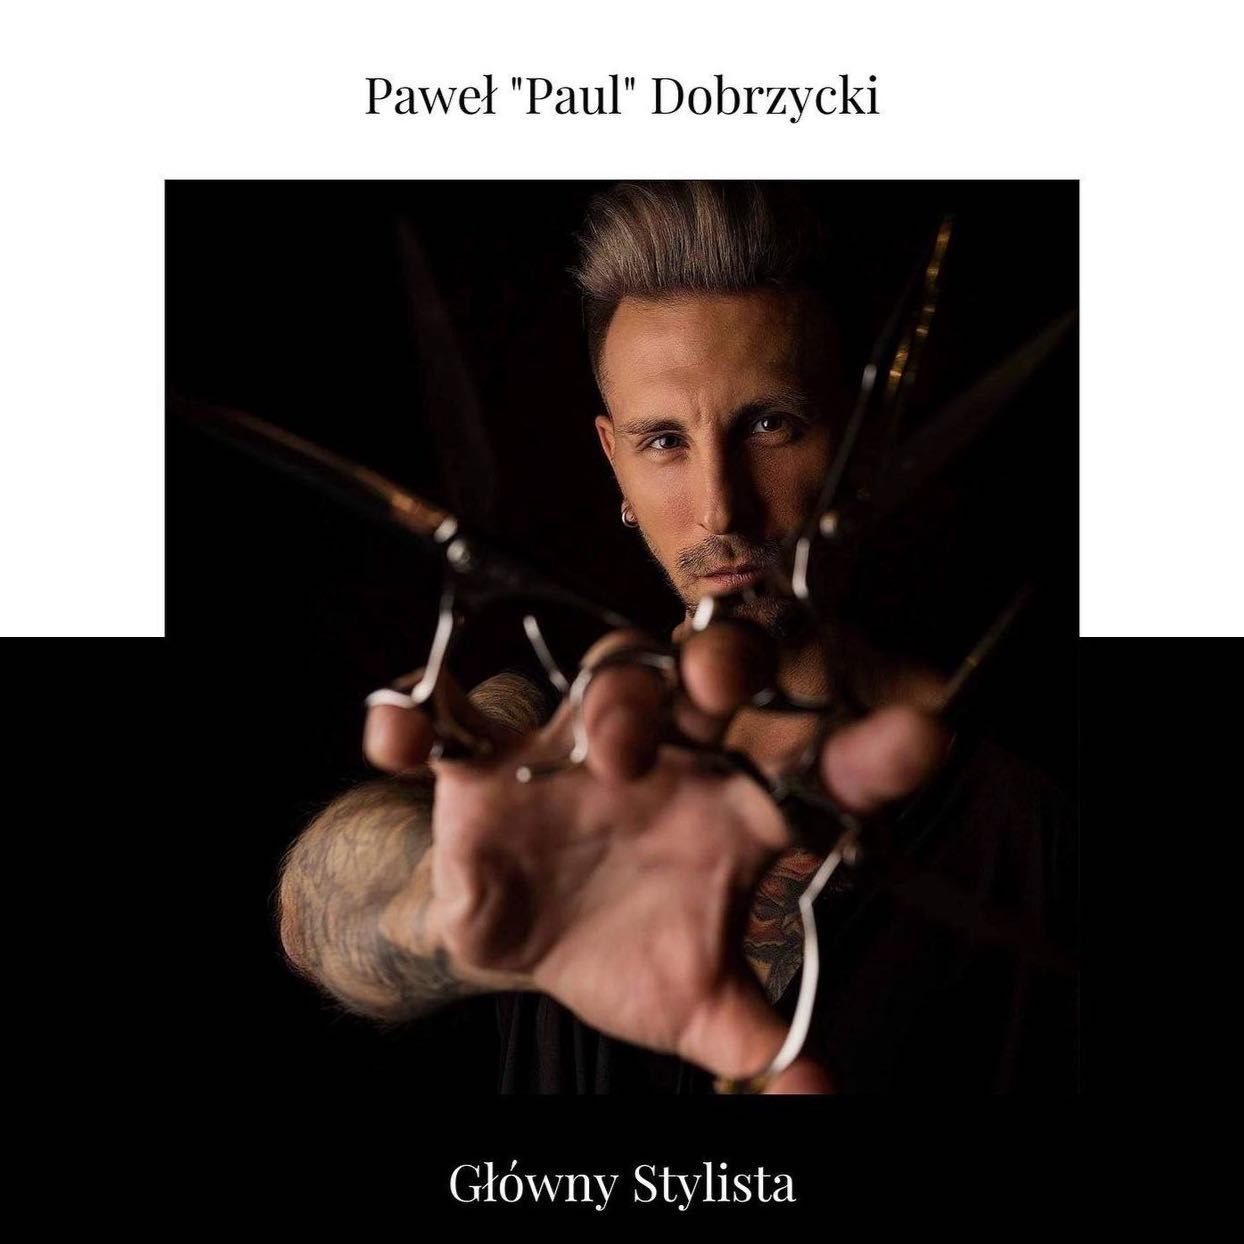 Paweł - Glow Nails & Paul Dobrzycki Hair Design